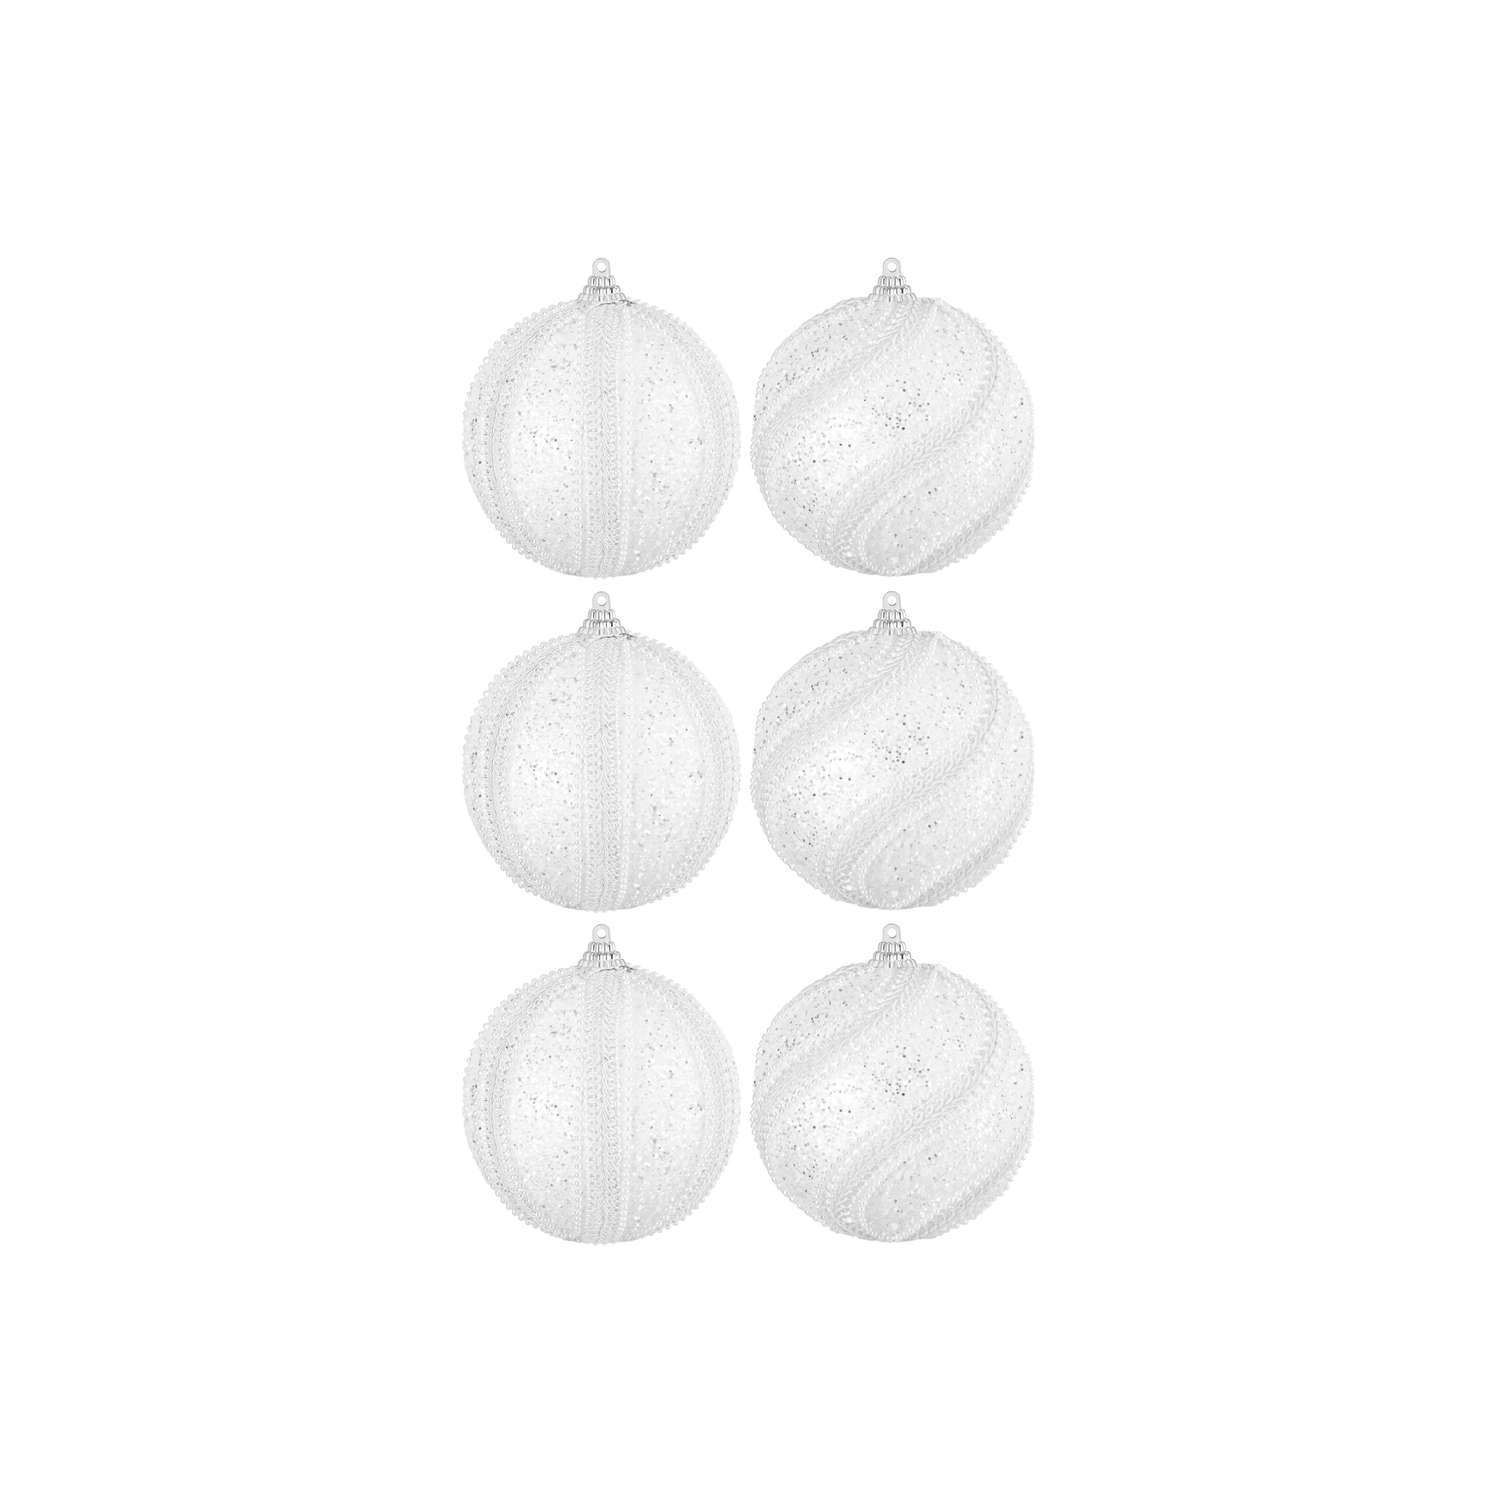 Набор Elan Gallery 6 новогодних шаров 9.5х9.5 см Жемчужины на белом - фото 1